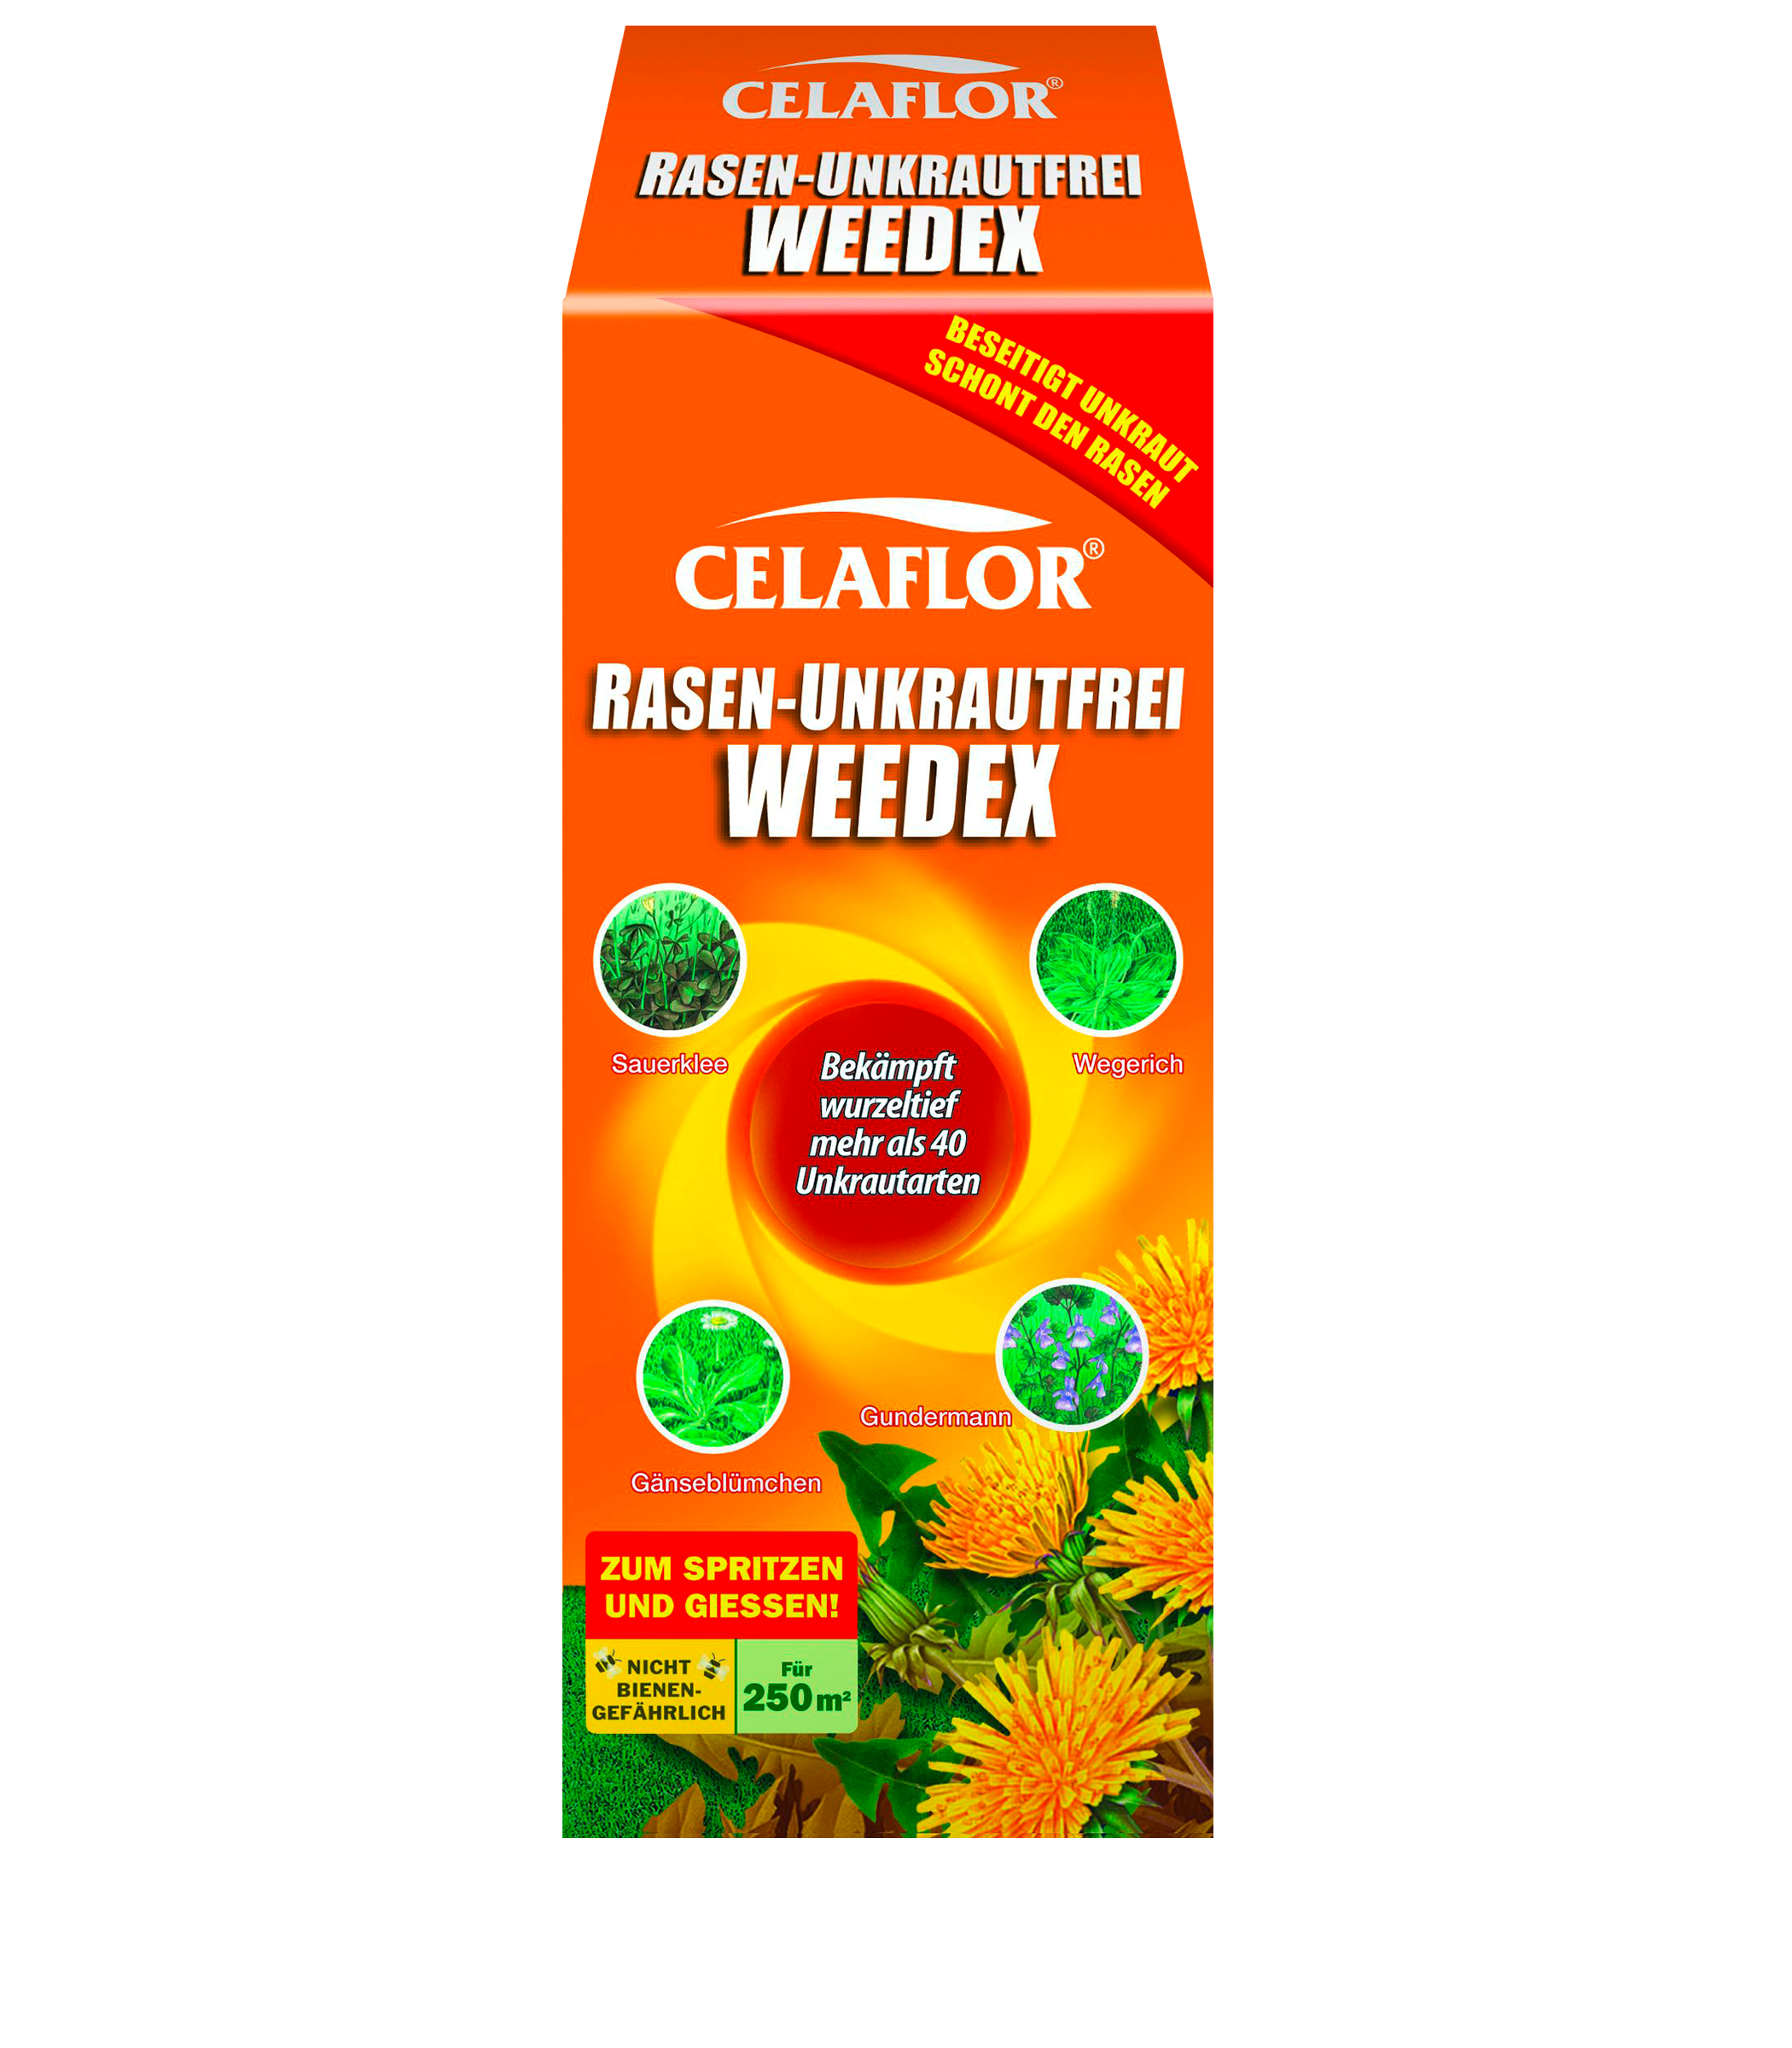 CELAFLOR  RASEN-UNKRAUTFREI WEEDEX  250 ml